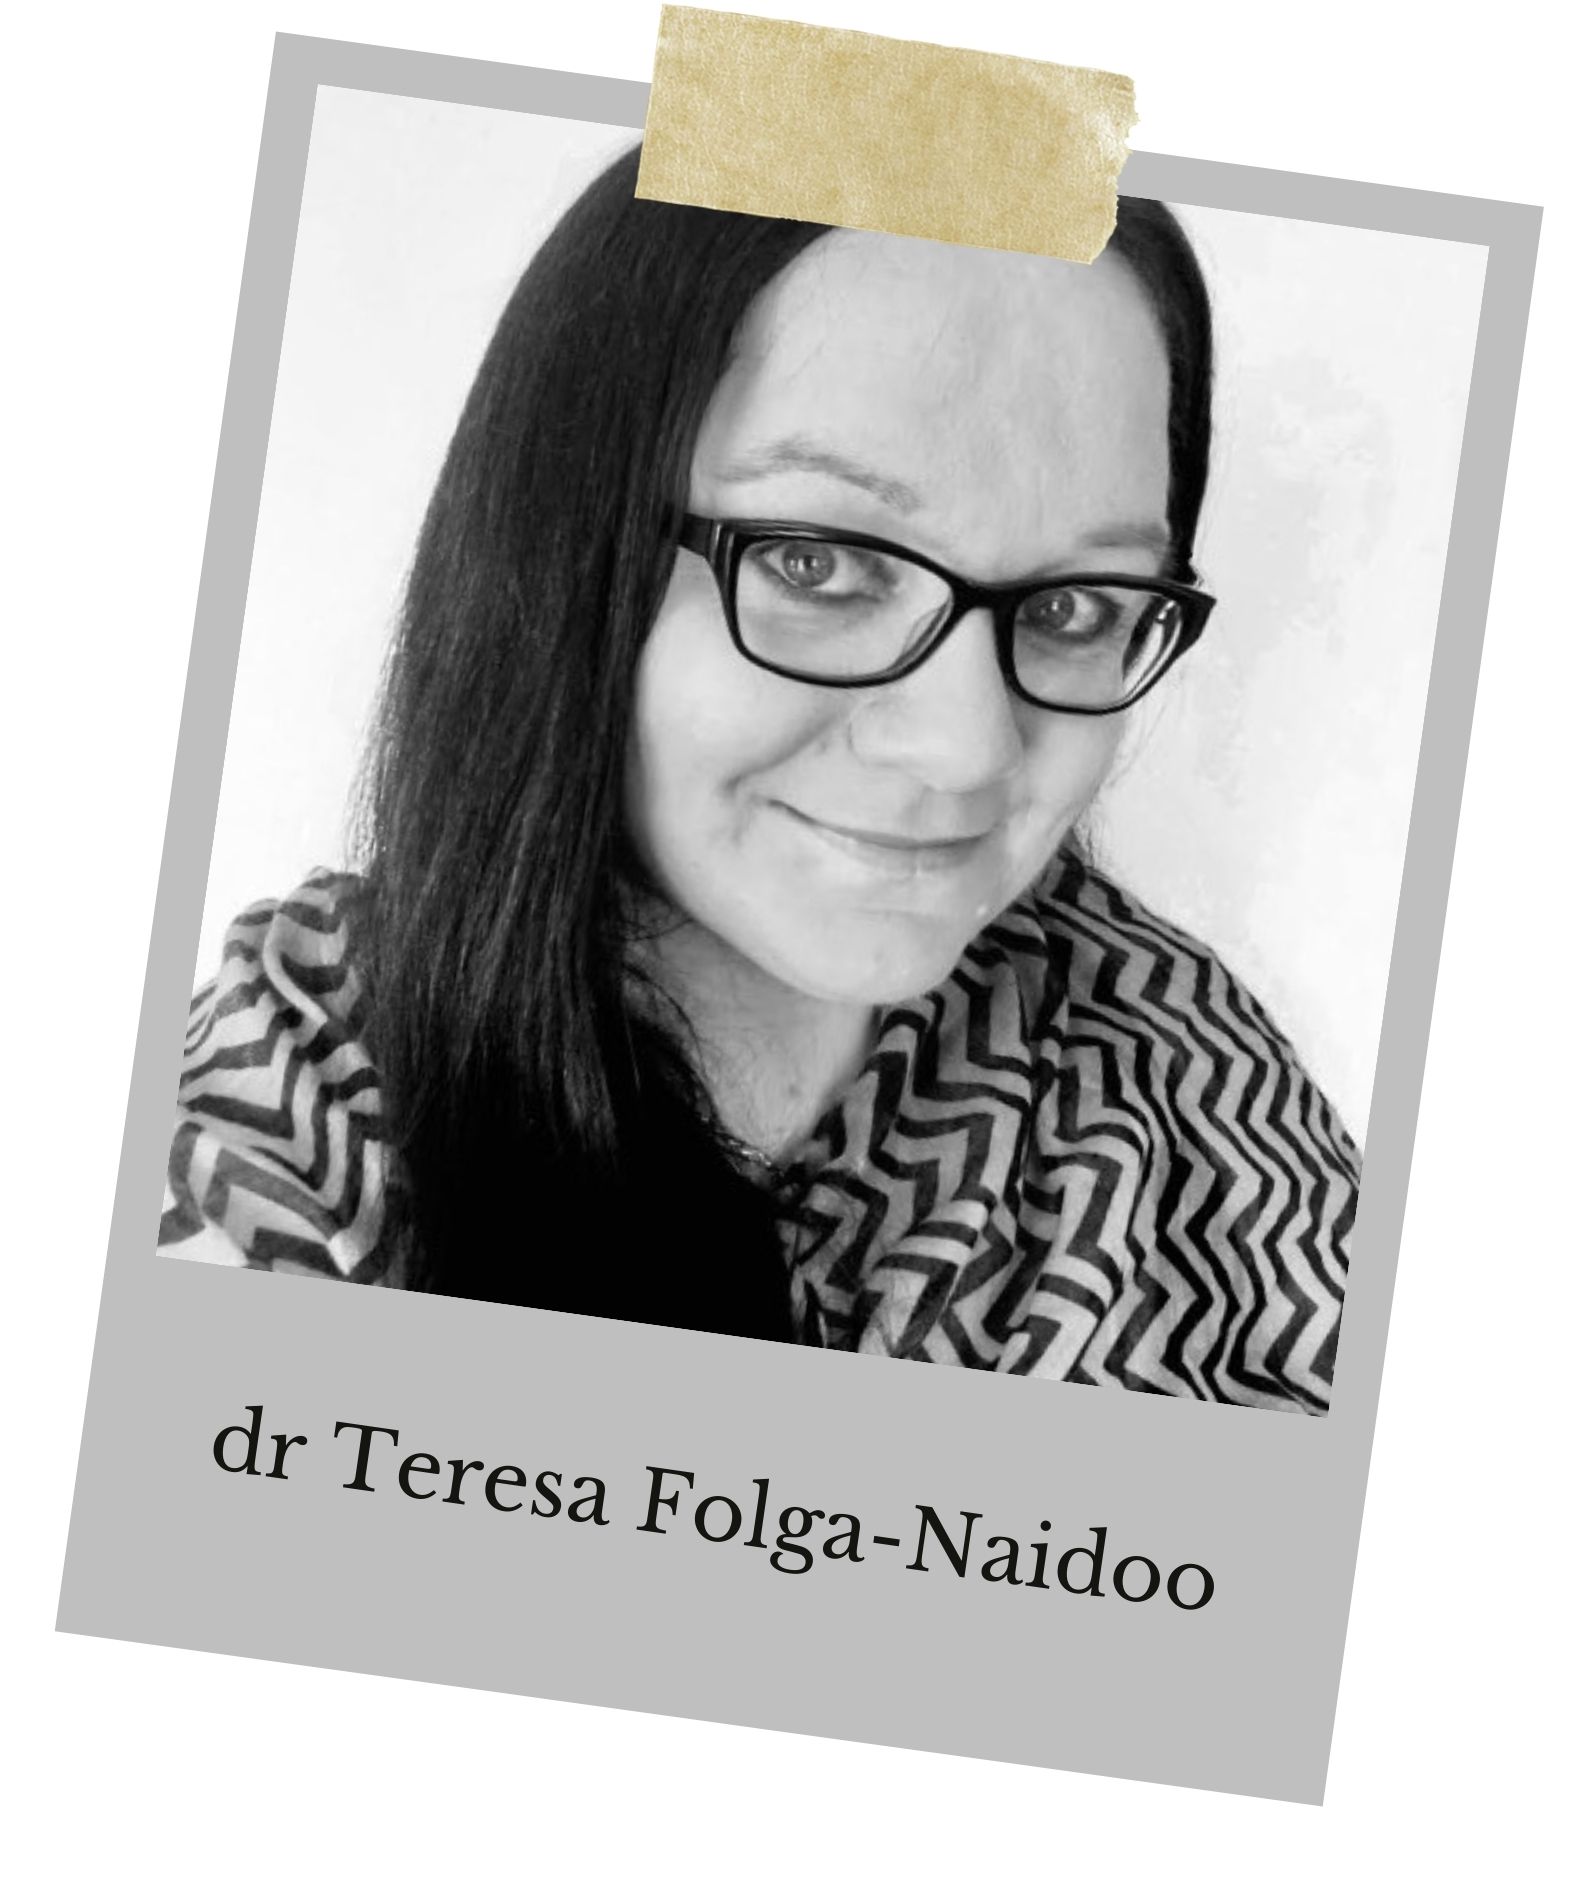 dr Teresa Folga-Naidoo